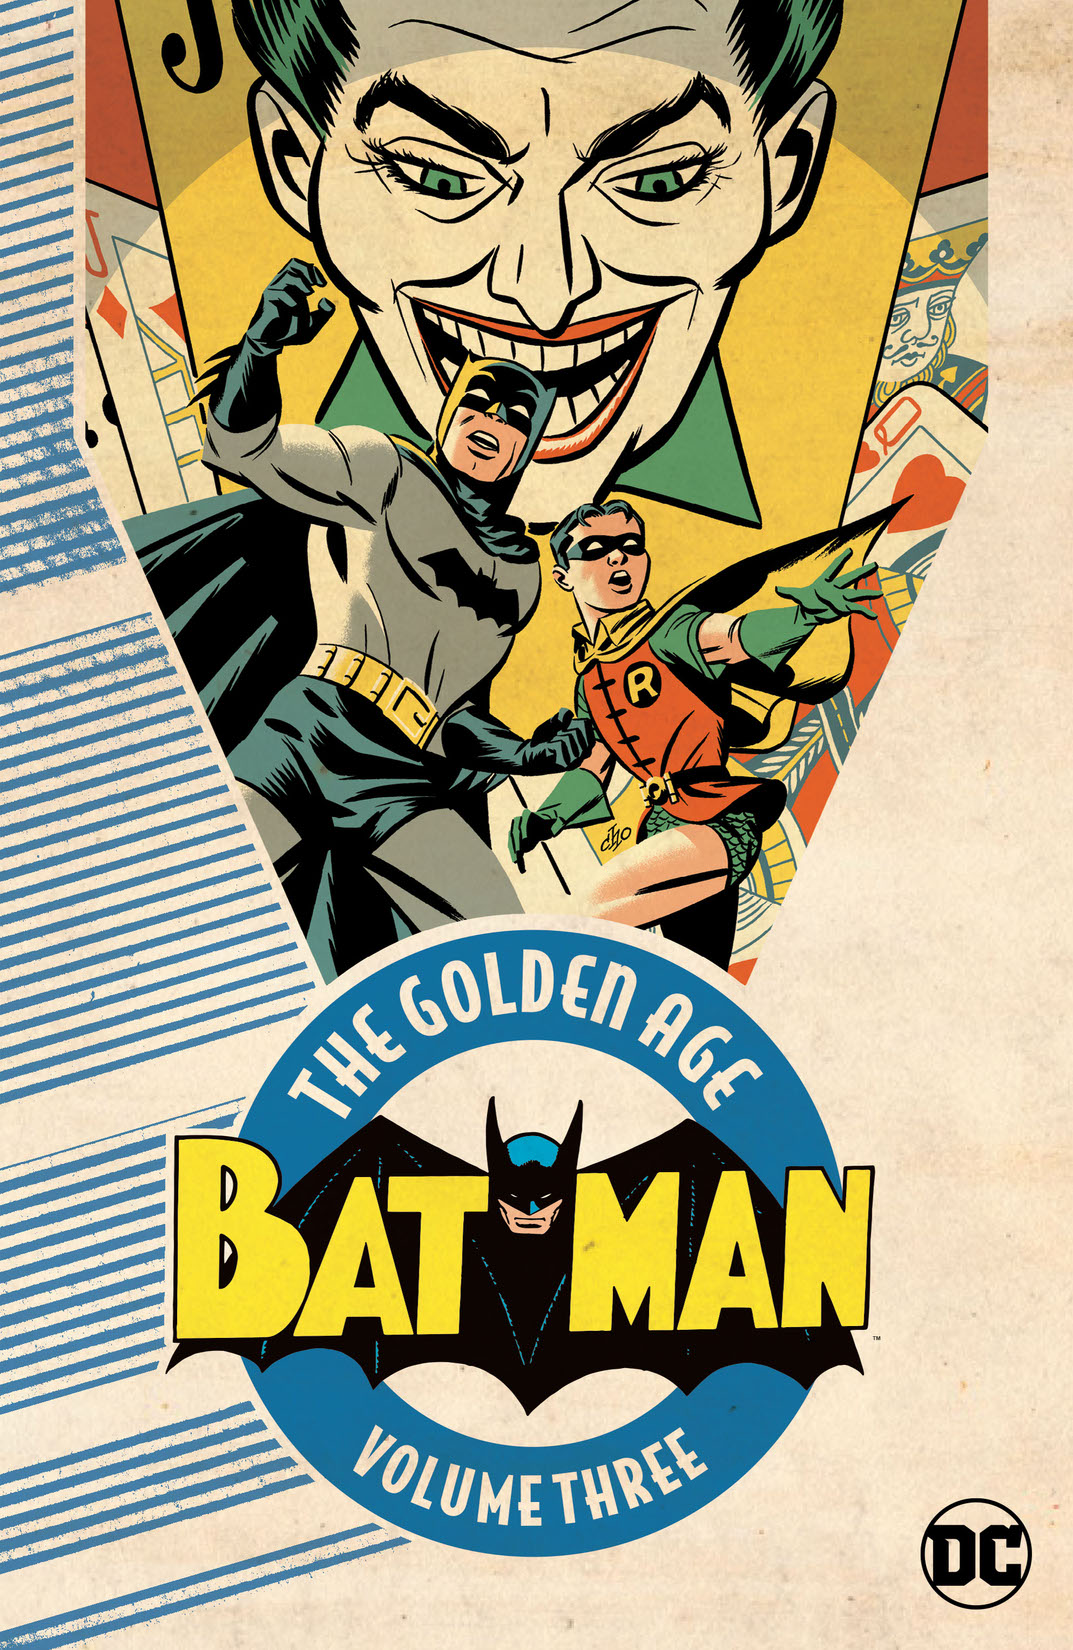 Batman: The Golden Age Vol. 3 preview images